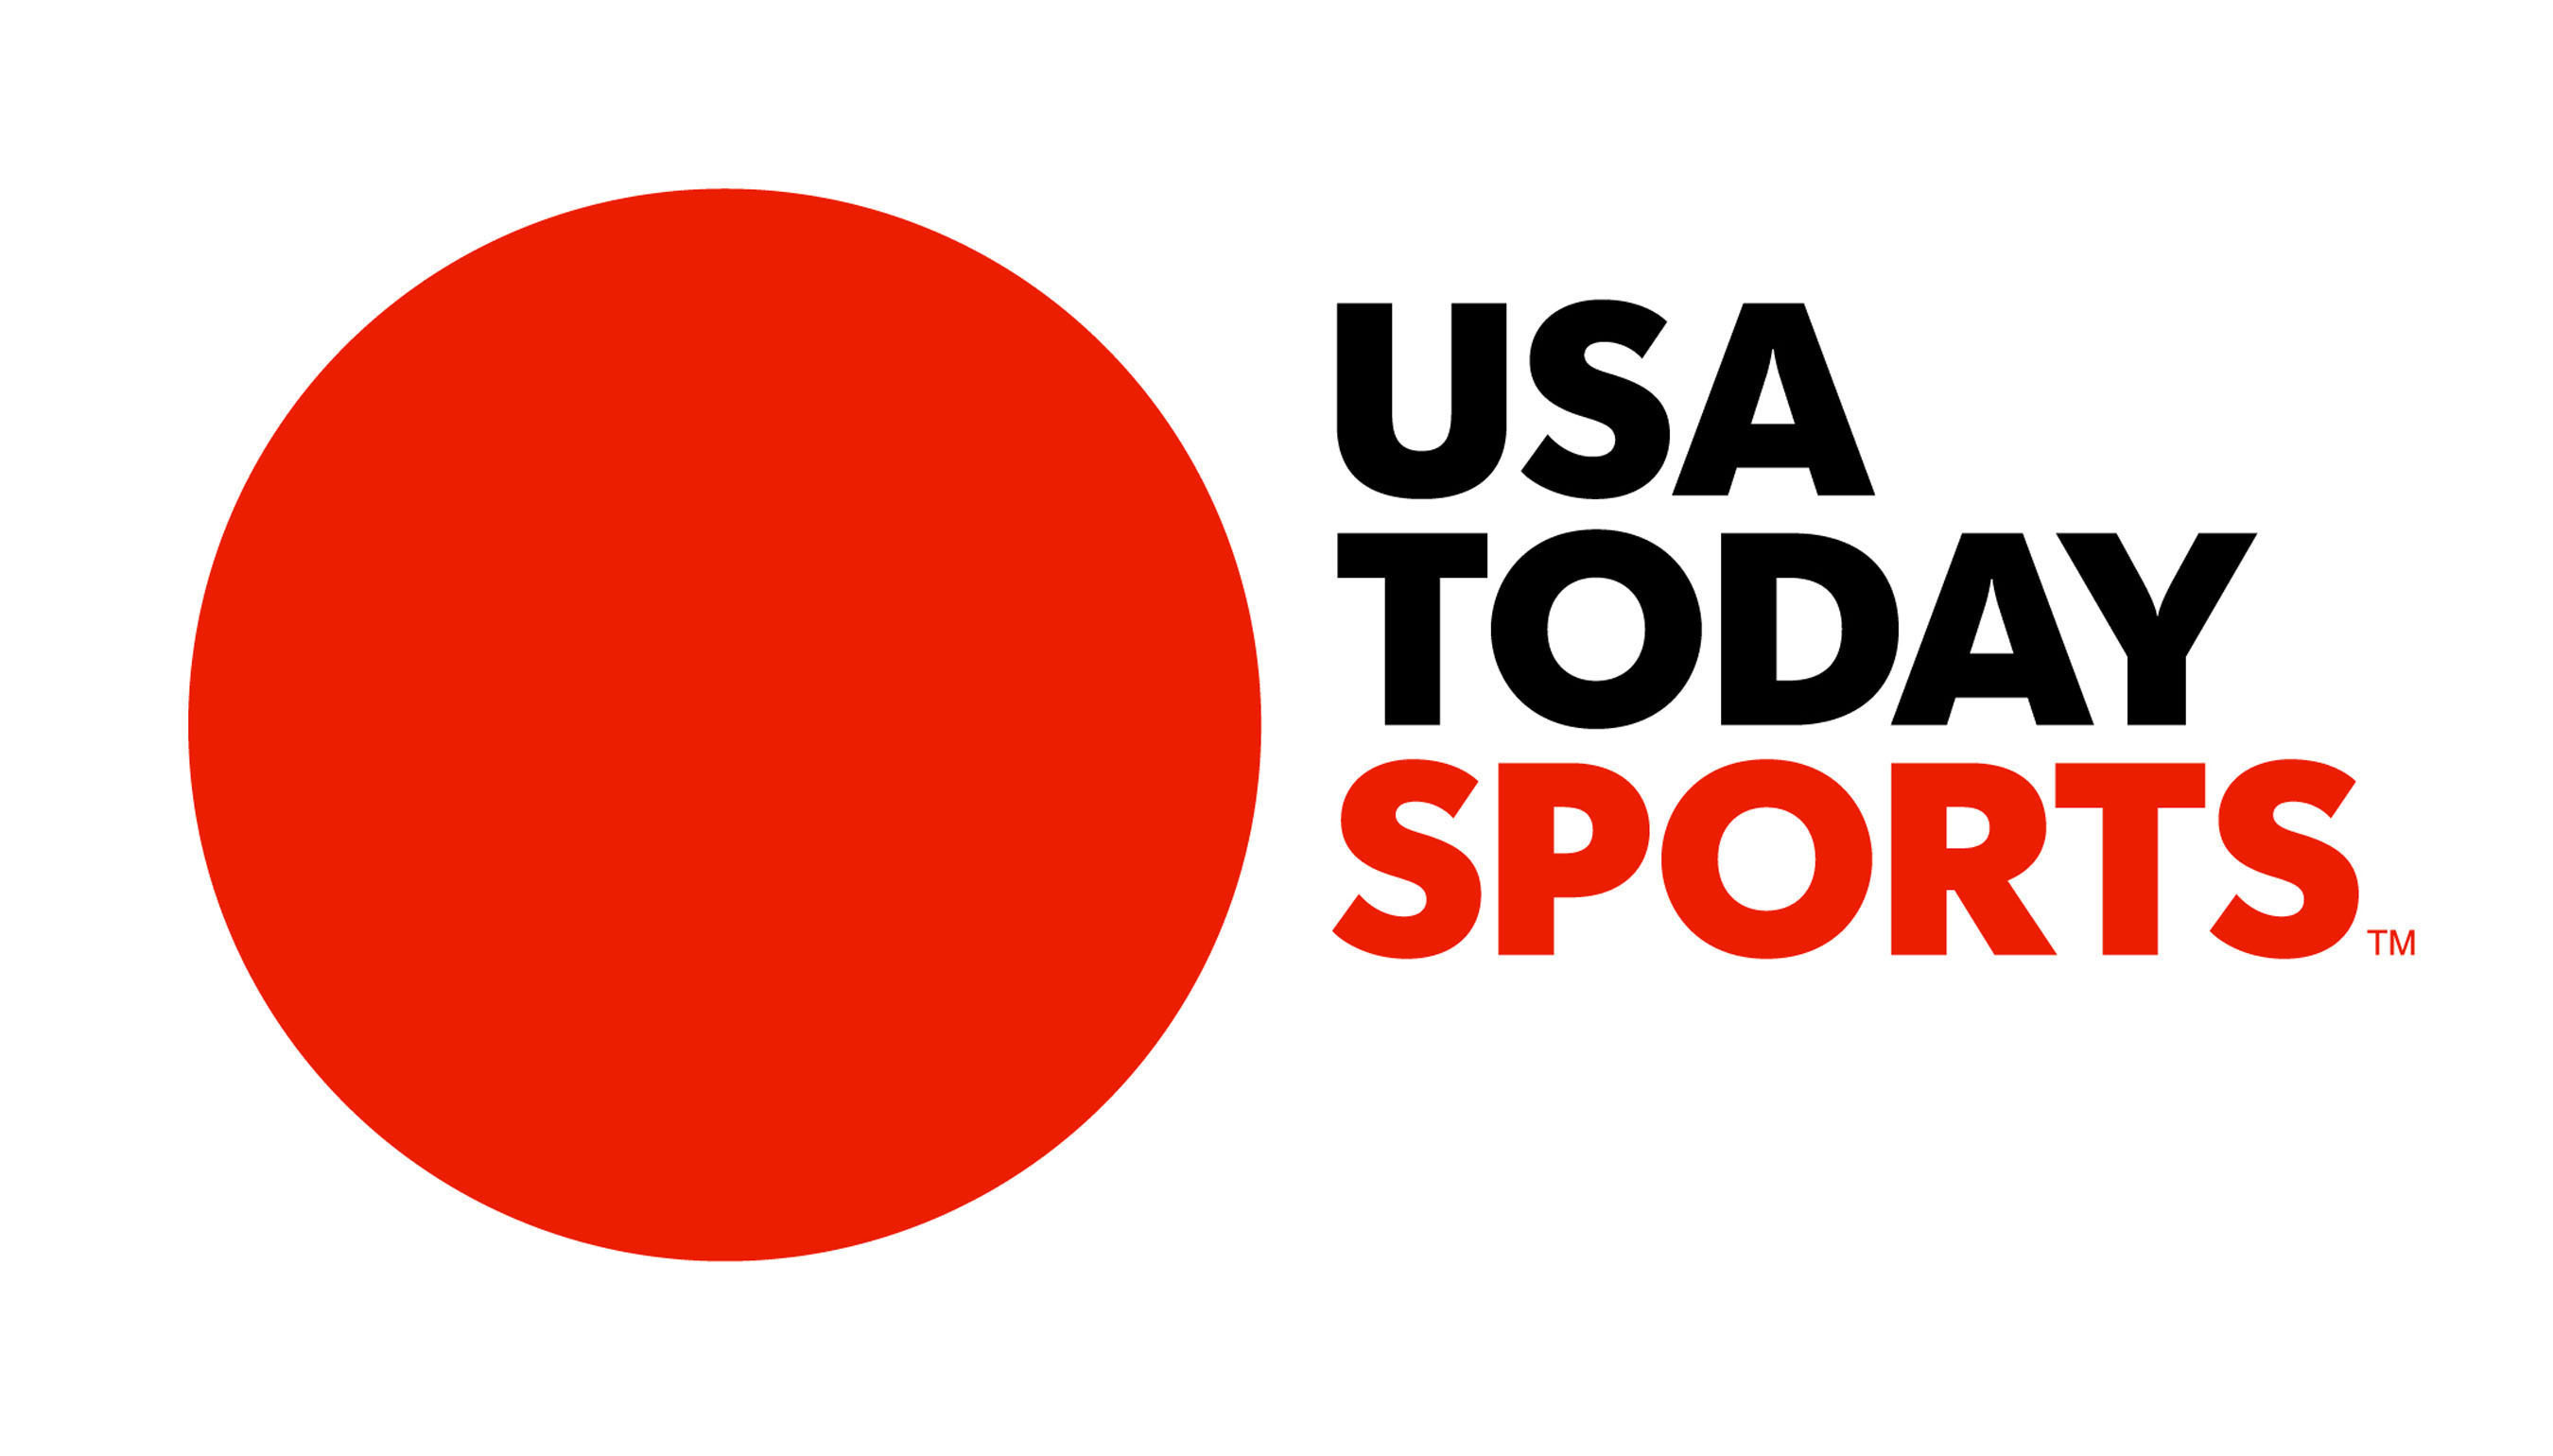 USA TODAY Sports Media Group Logo. (PRNewsFoto/USA TODAY Sports Media Group) (PRNewsFoto/)